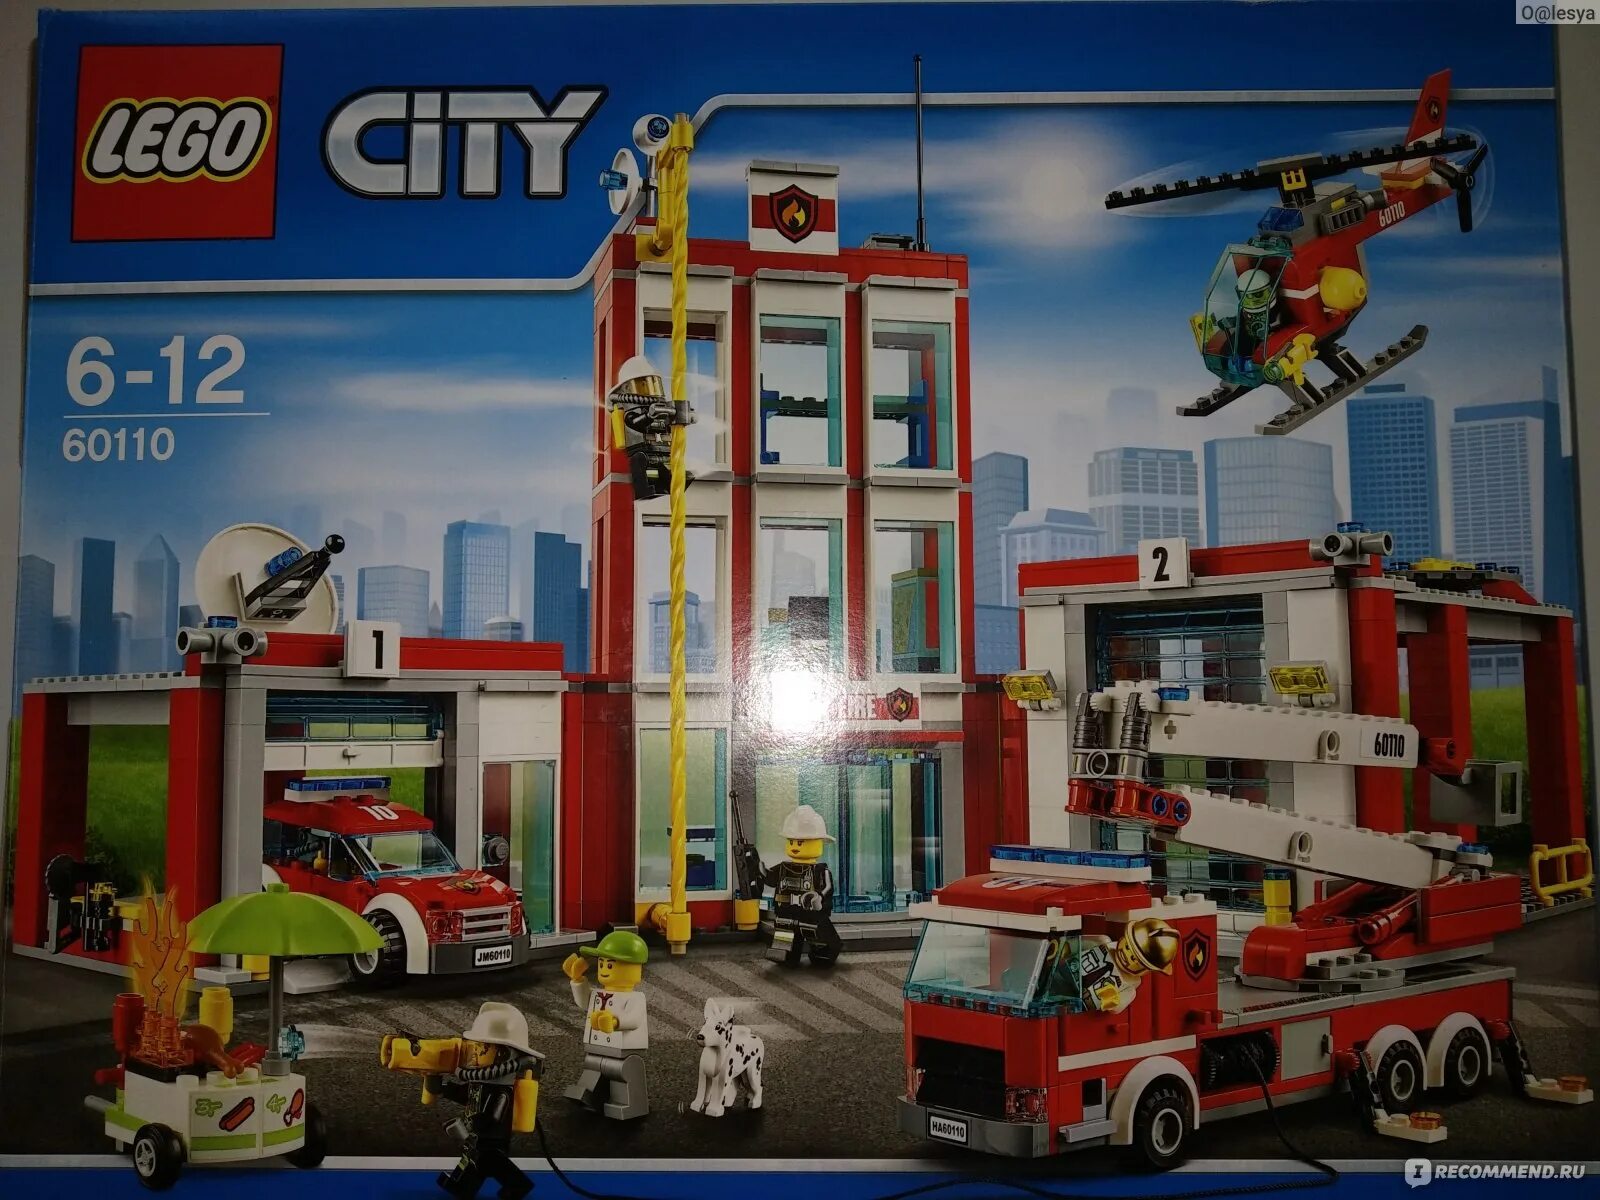 LEGO City 60110. Лего Сити пожарная часть 60110. Лего пожарная часть 60110. Конструктор LEGO City 60110 пожарная часть. Сити пожарная